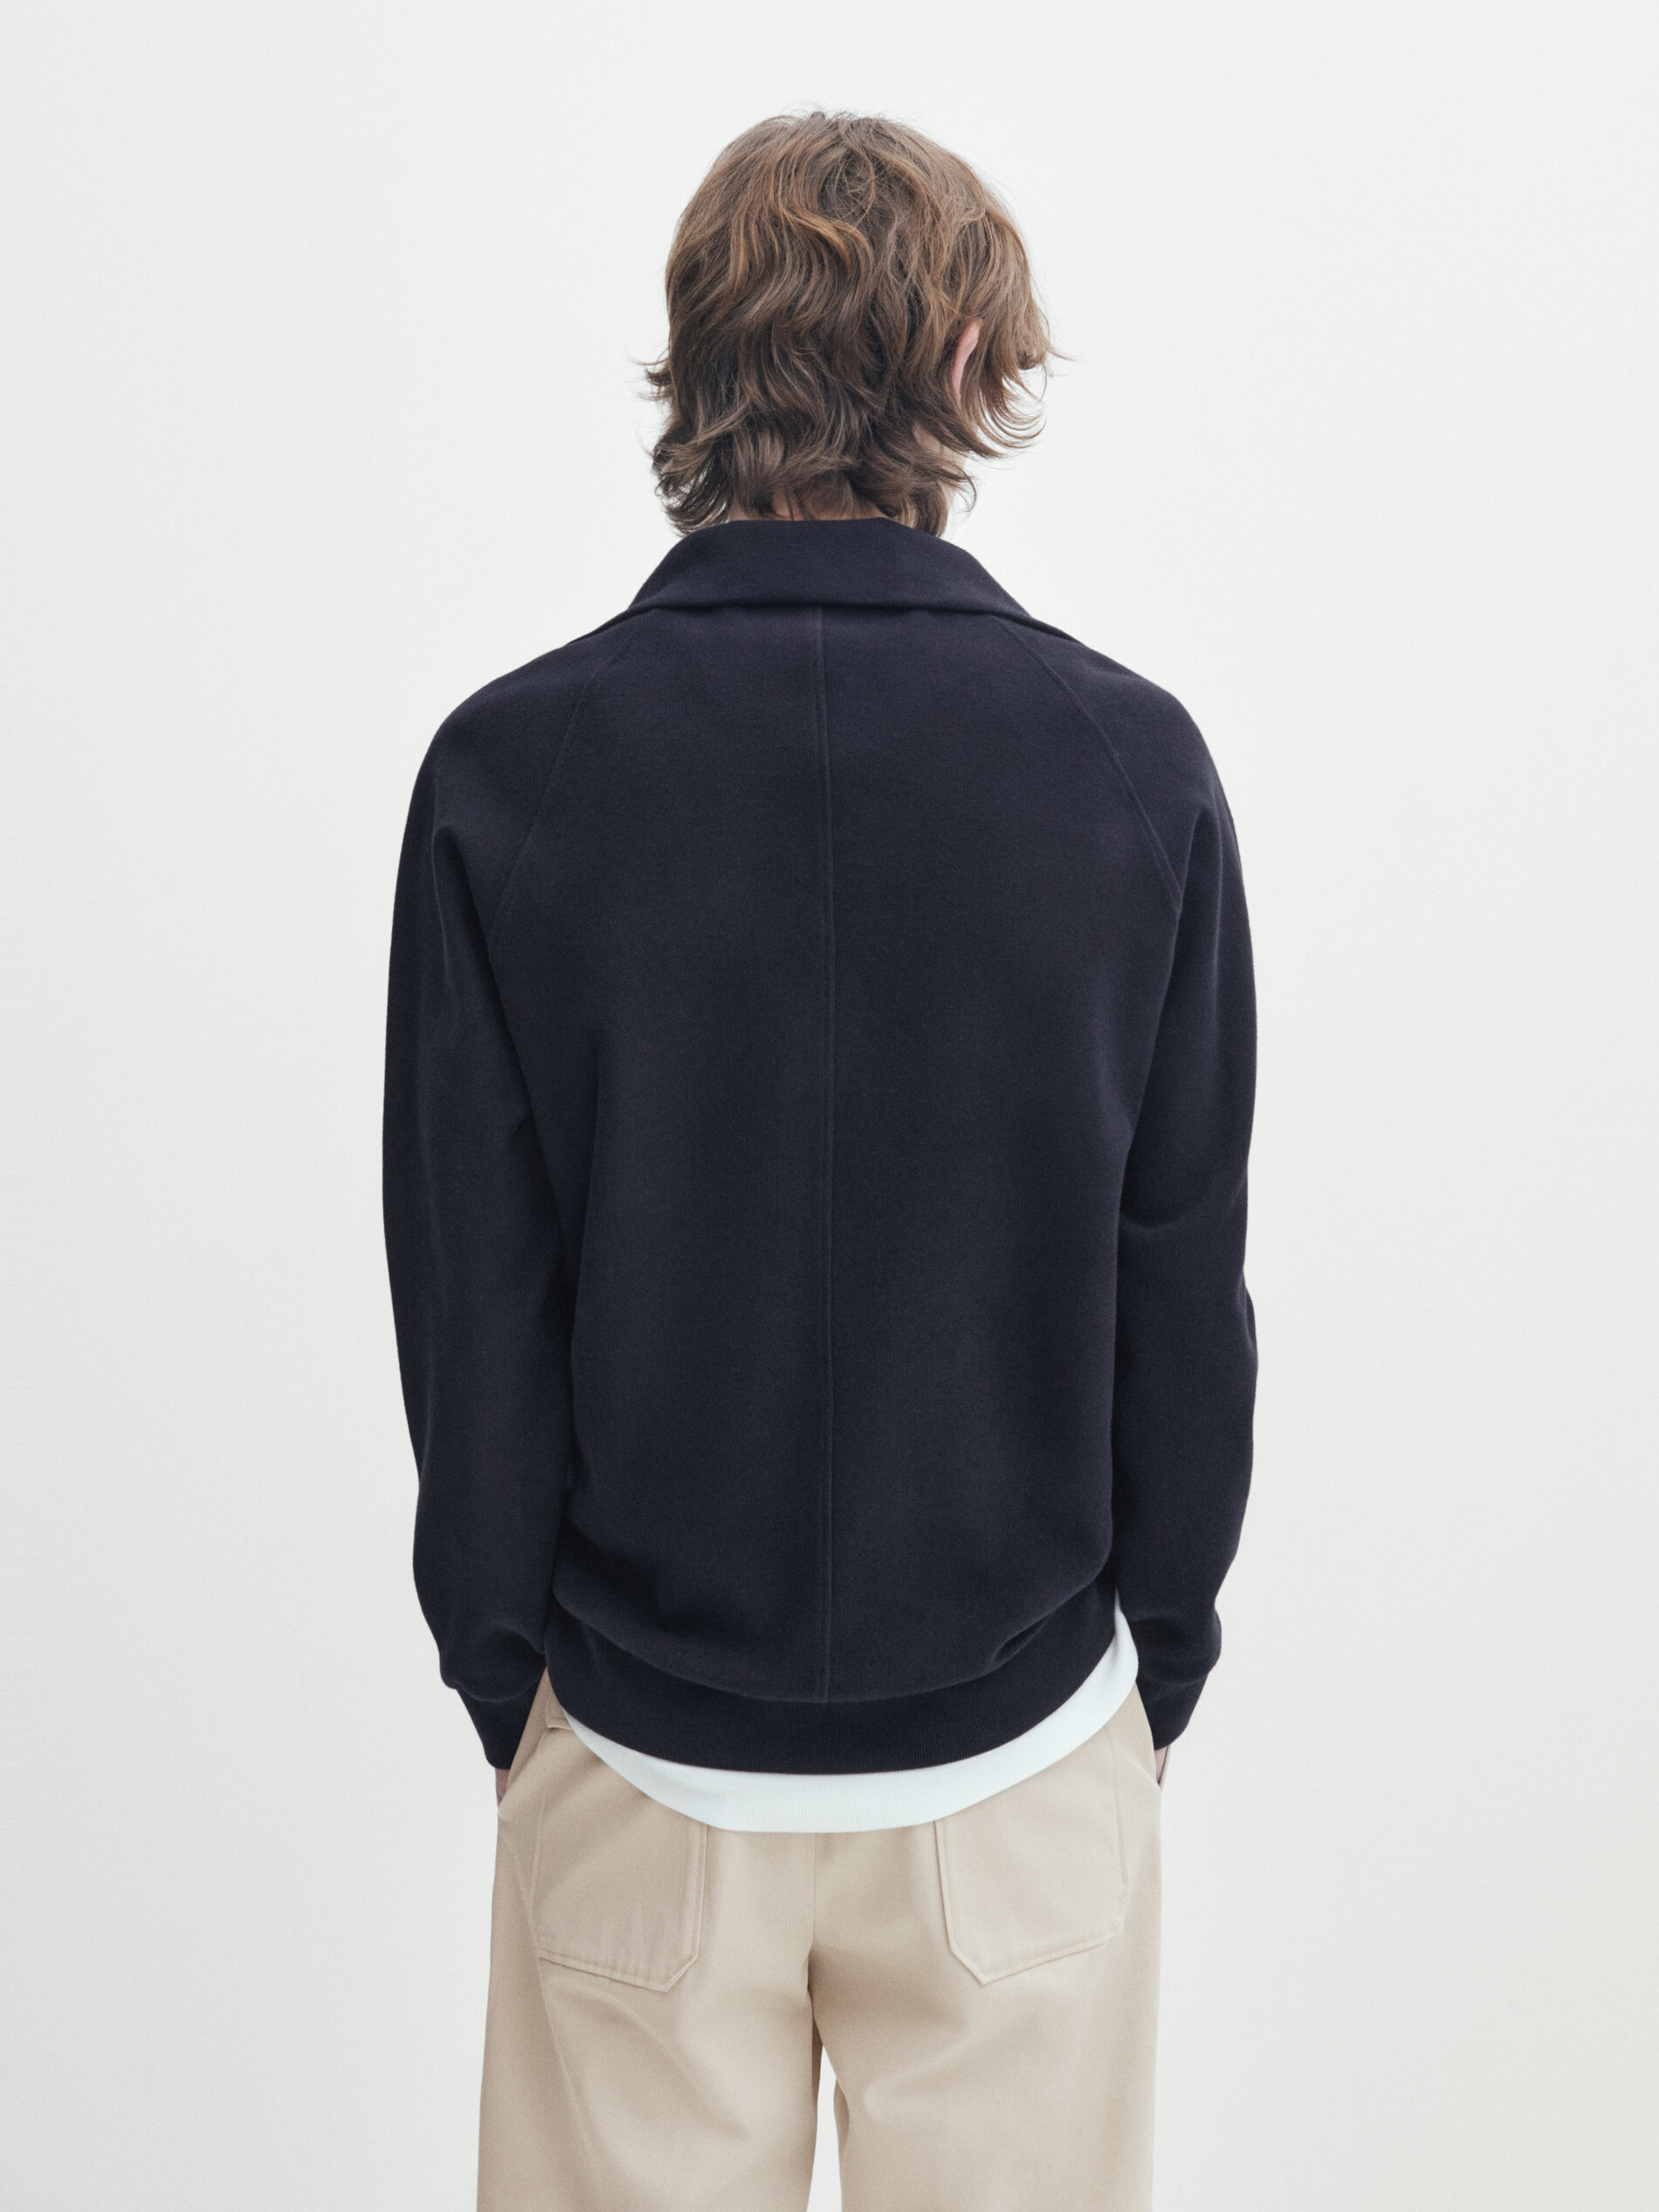 Massimo Dutti Sweatshirt Mit Stehkragen Und Reissverschluss In Marineblau